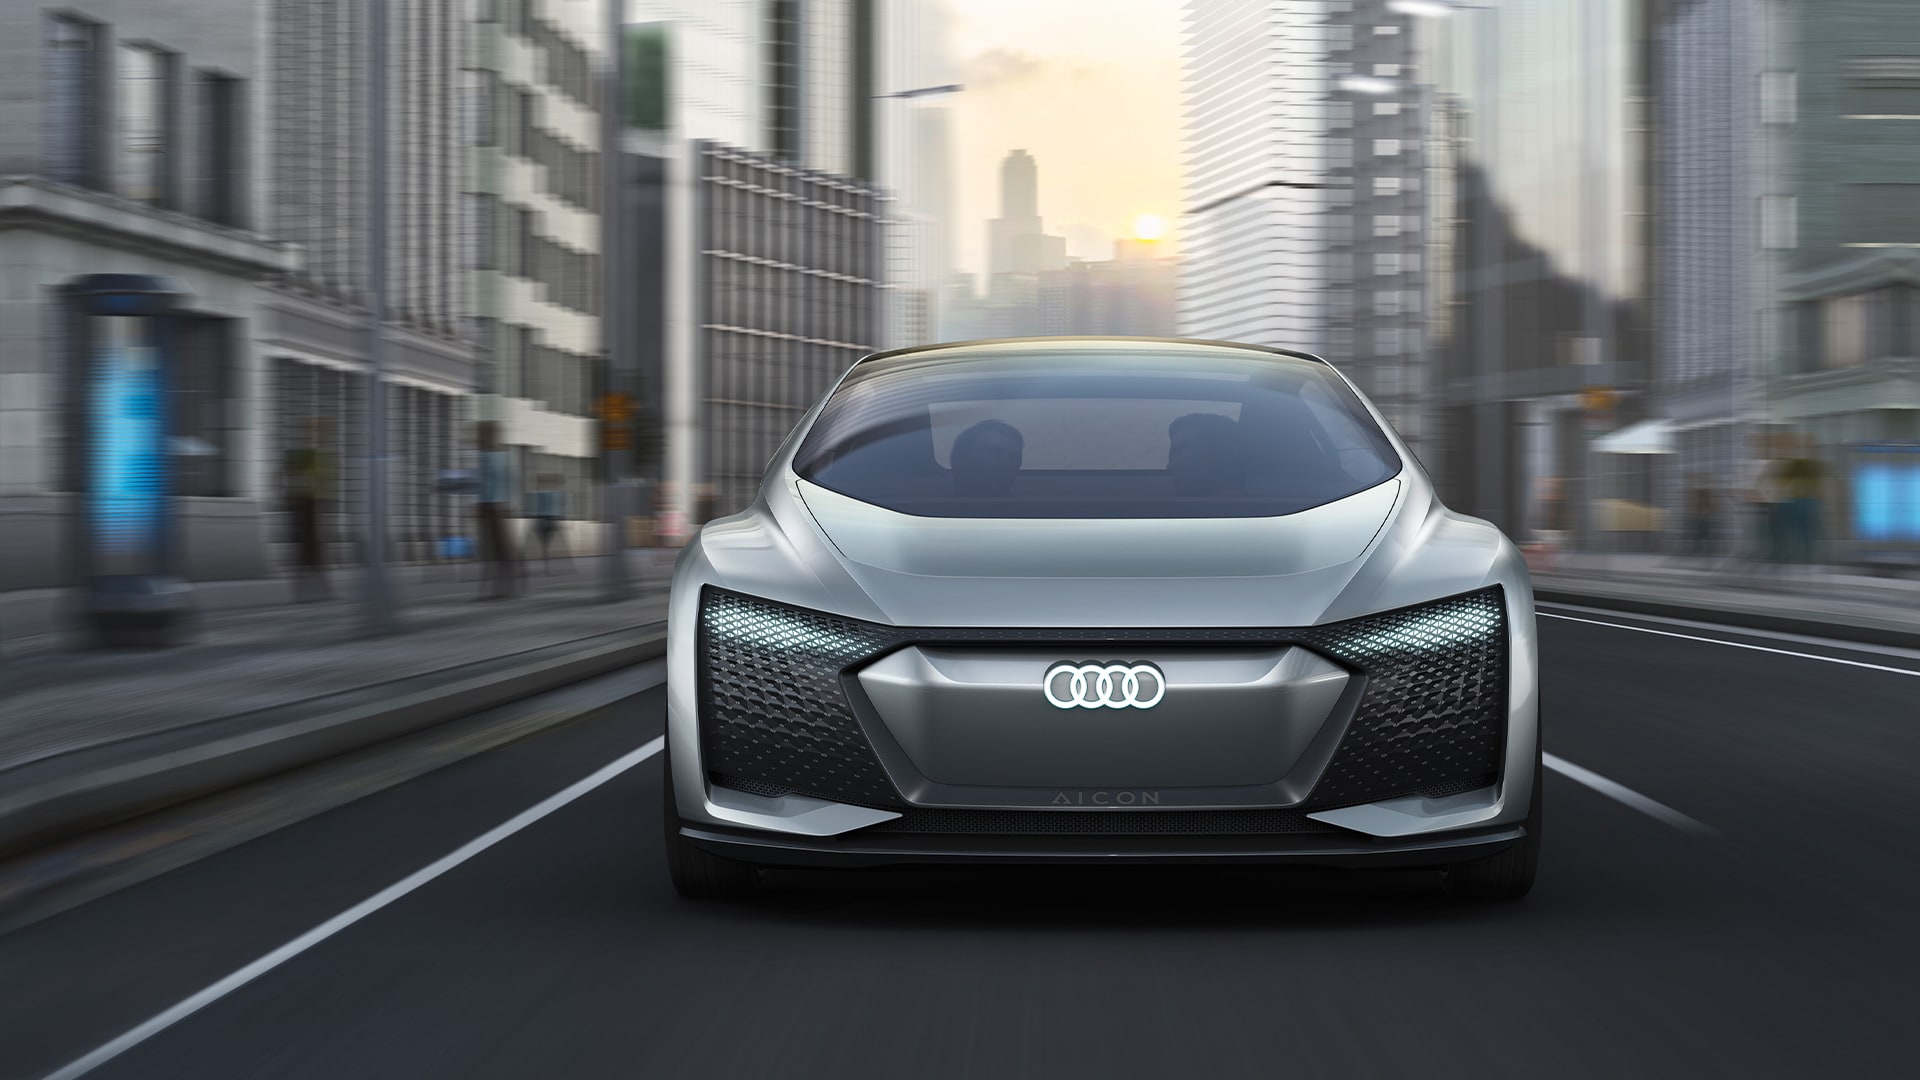 Foto del prototipo Audi AI:CON que presenta una visión de futuro de un vehículo de conducción autónoma de nivel 5.